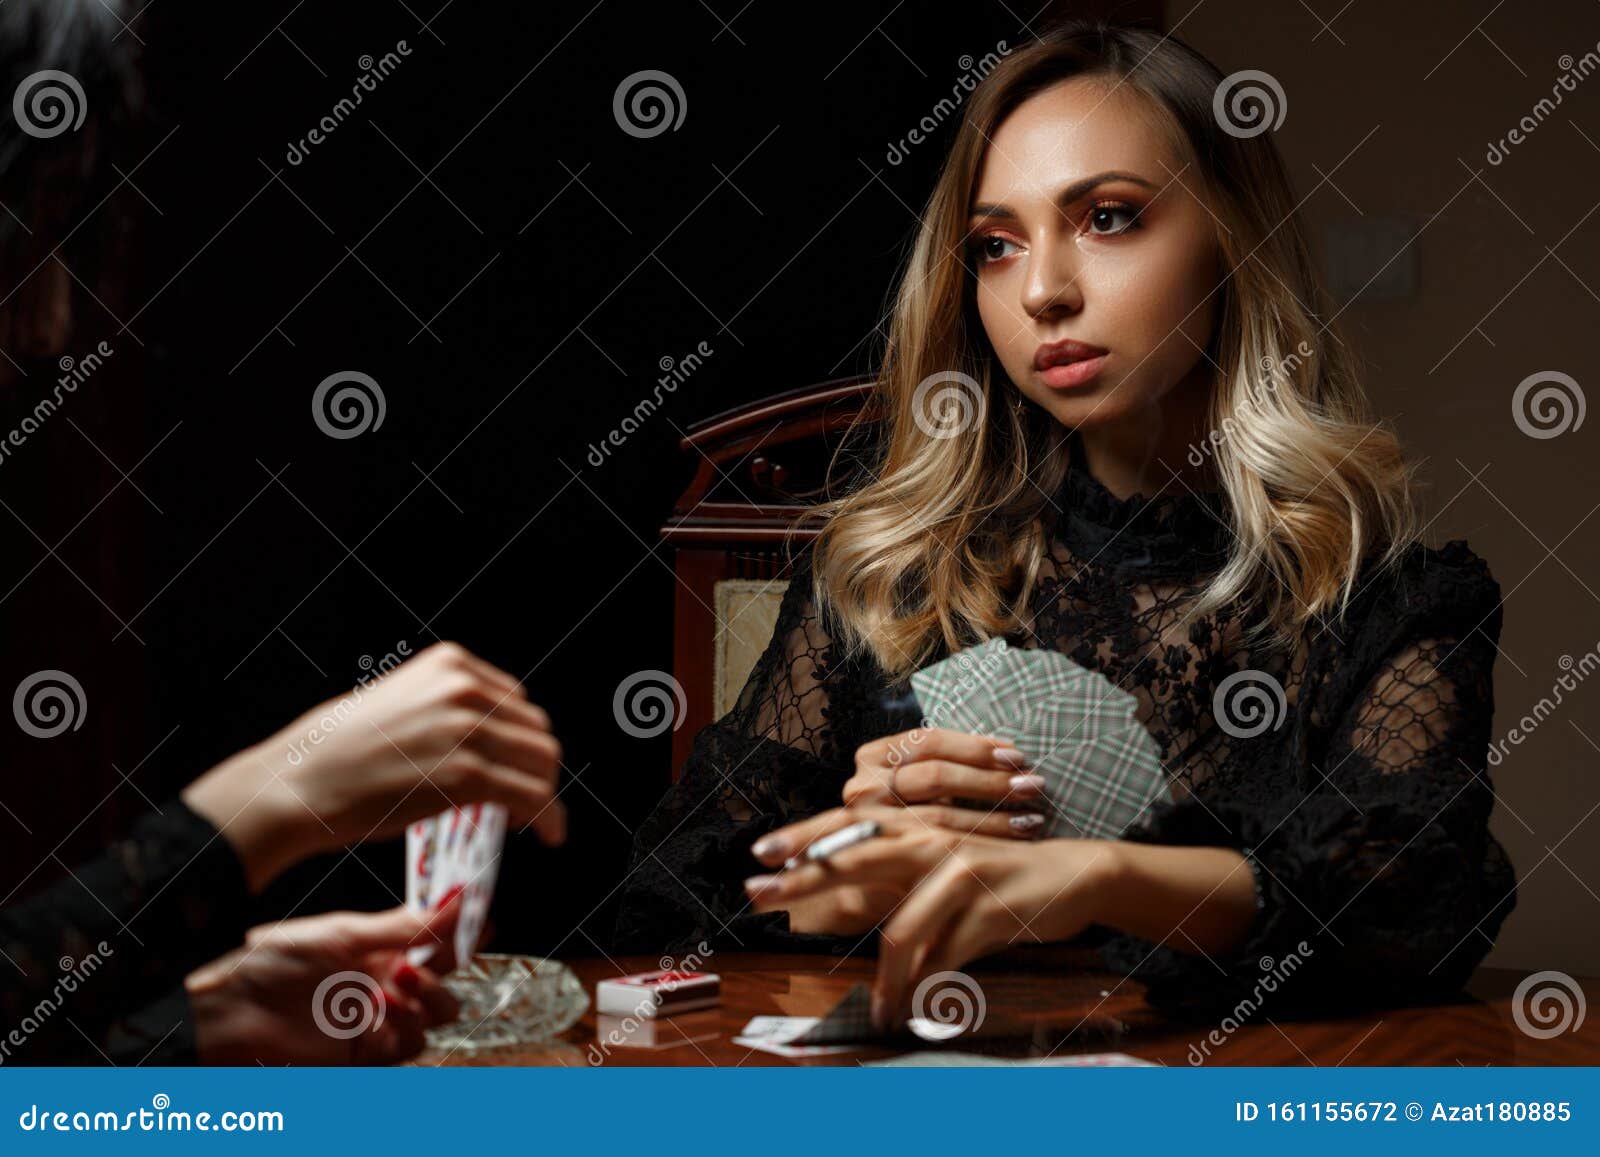 девочки играют карты на раздевание